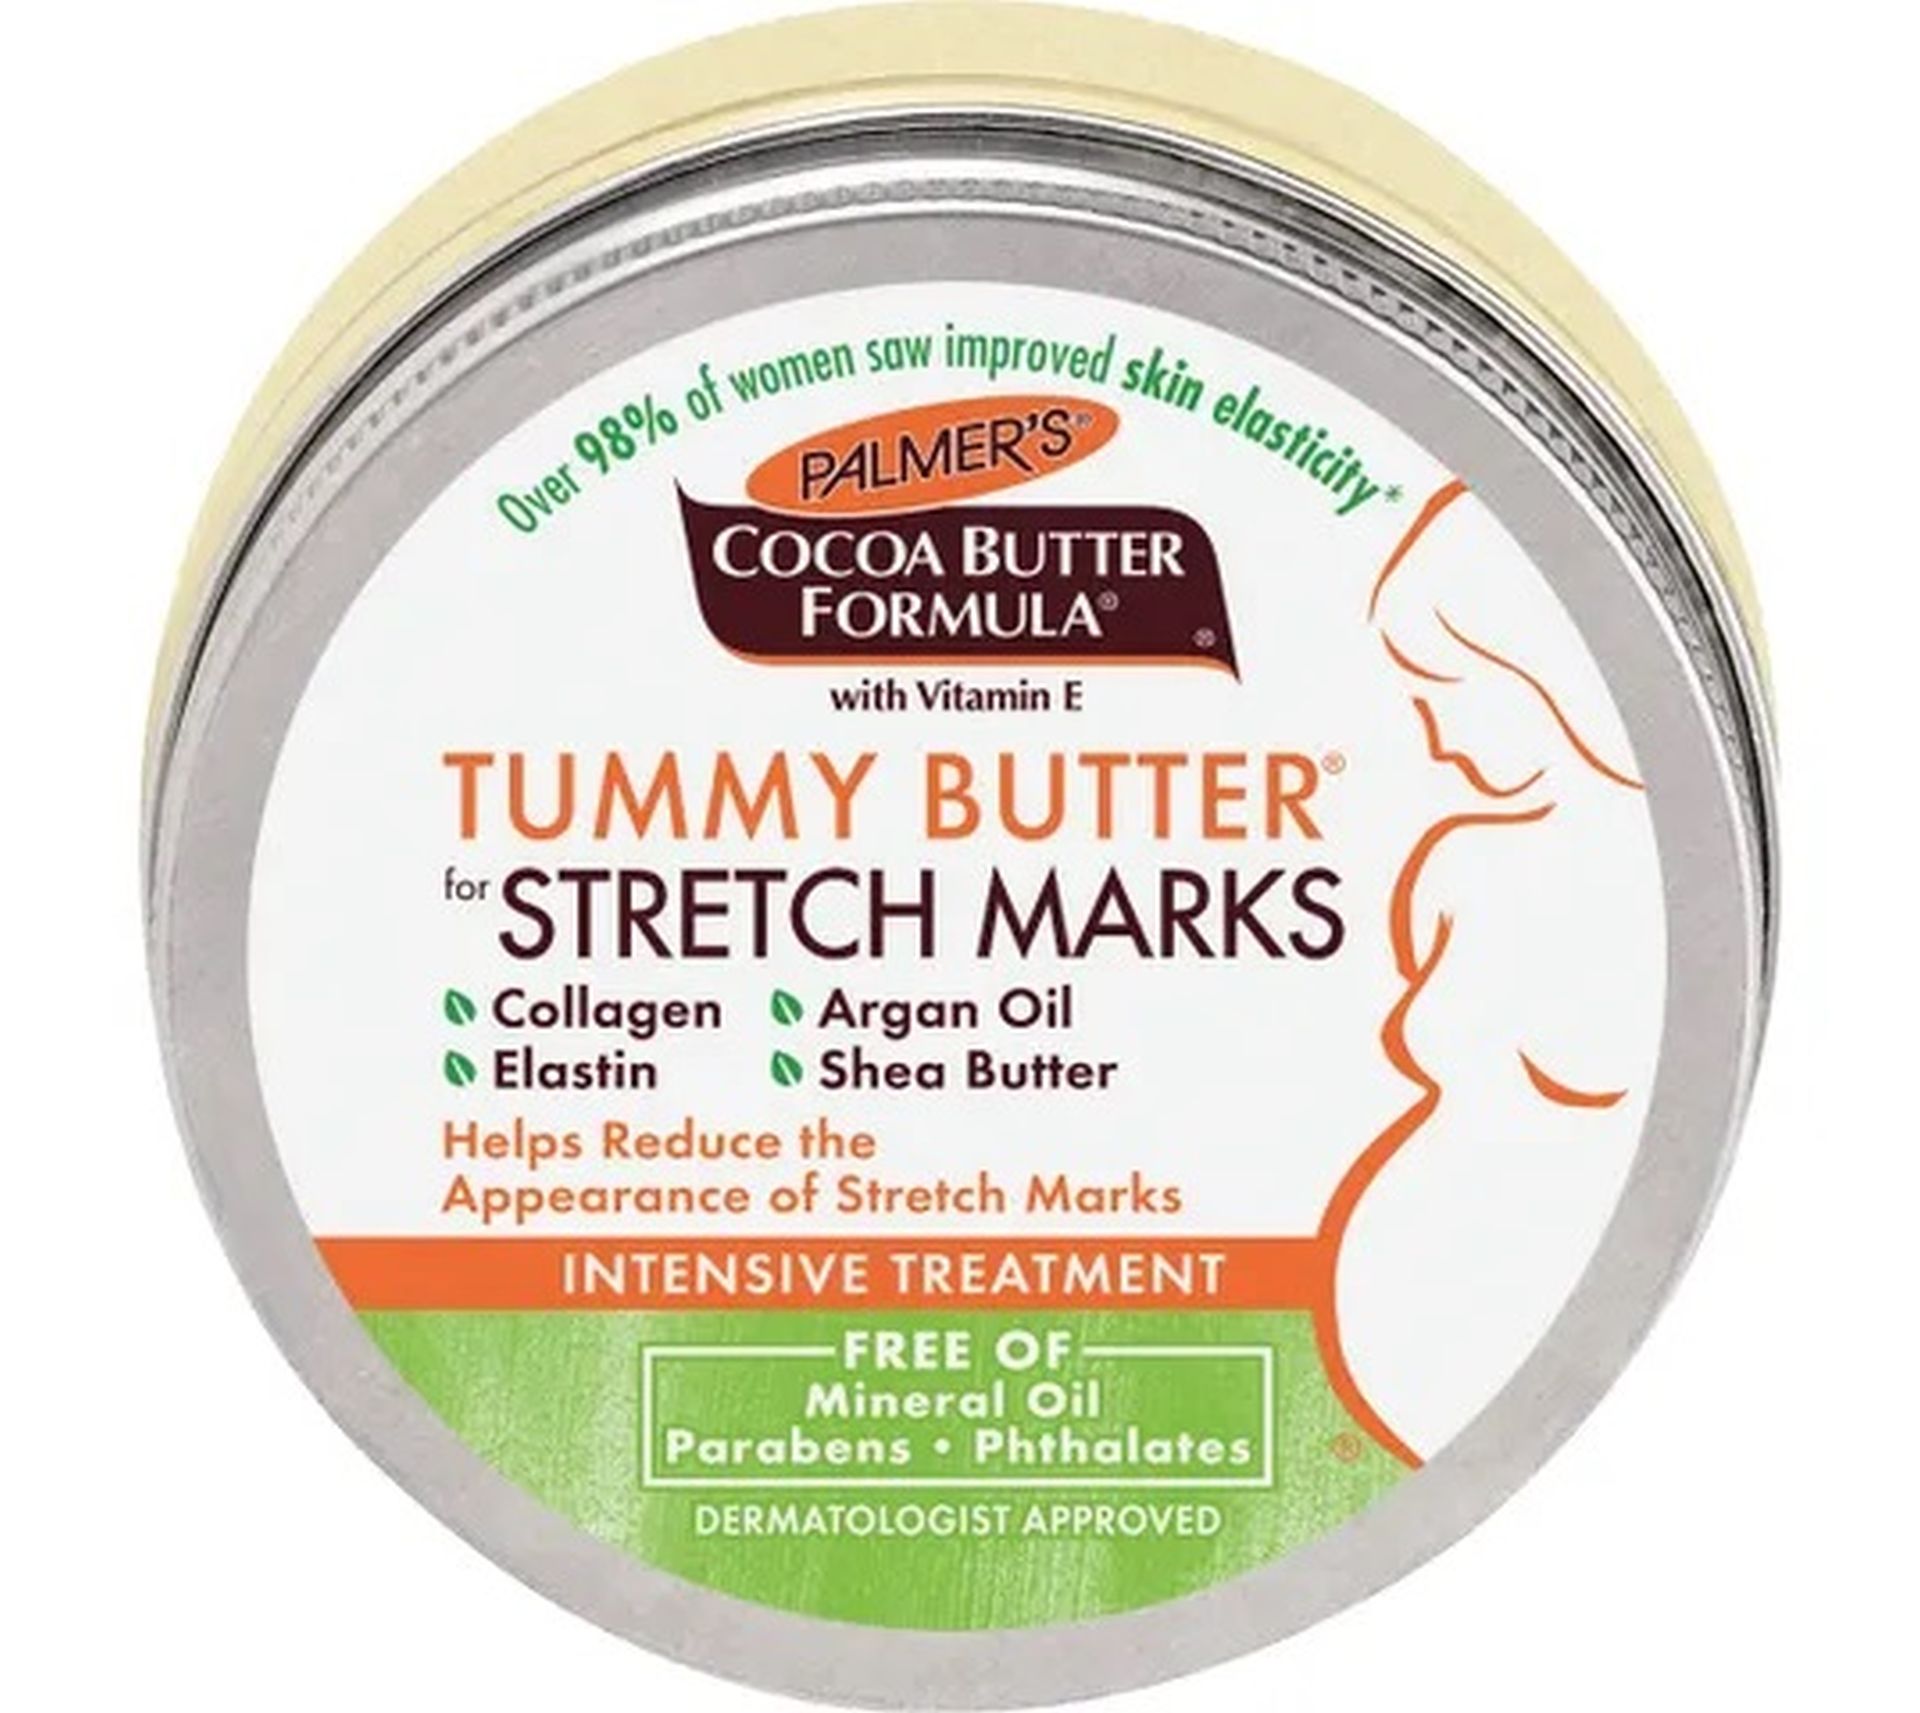 Palmer's Cocoa Butter Formula Tummy Butter for Stretch Marks masło do pielęgnacji brzucha w czasie ciąży (125 g)